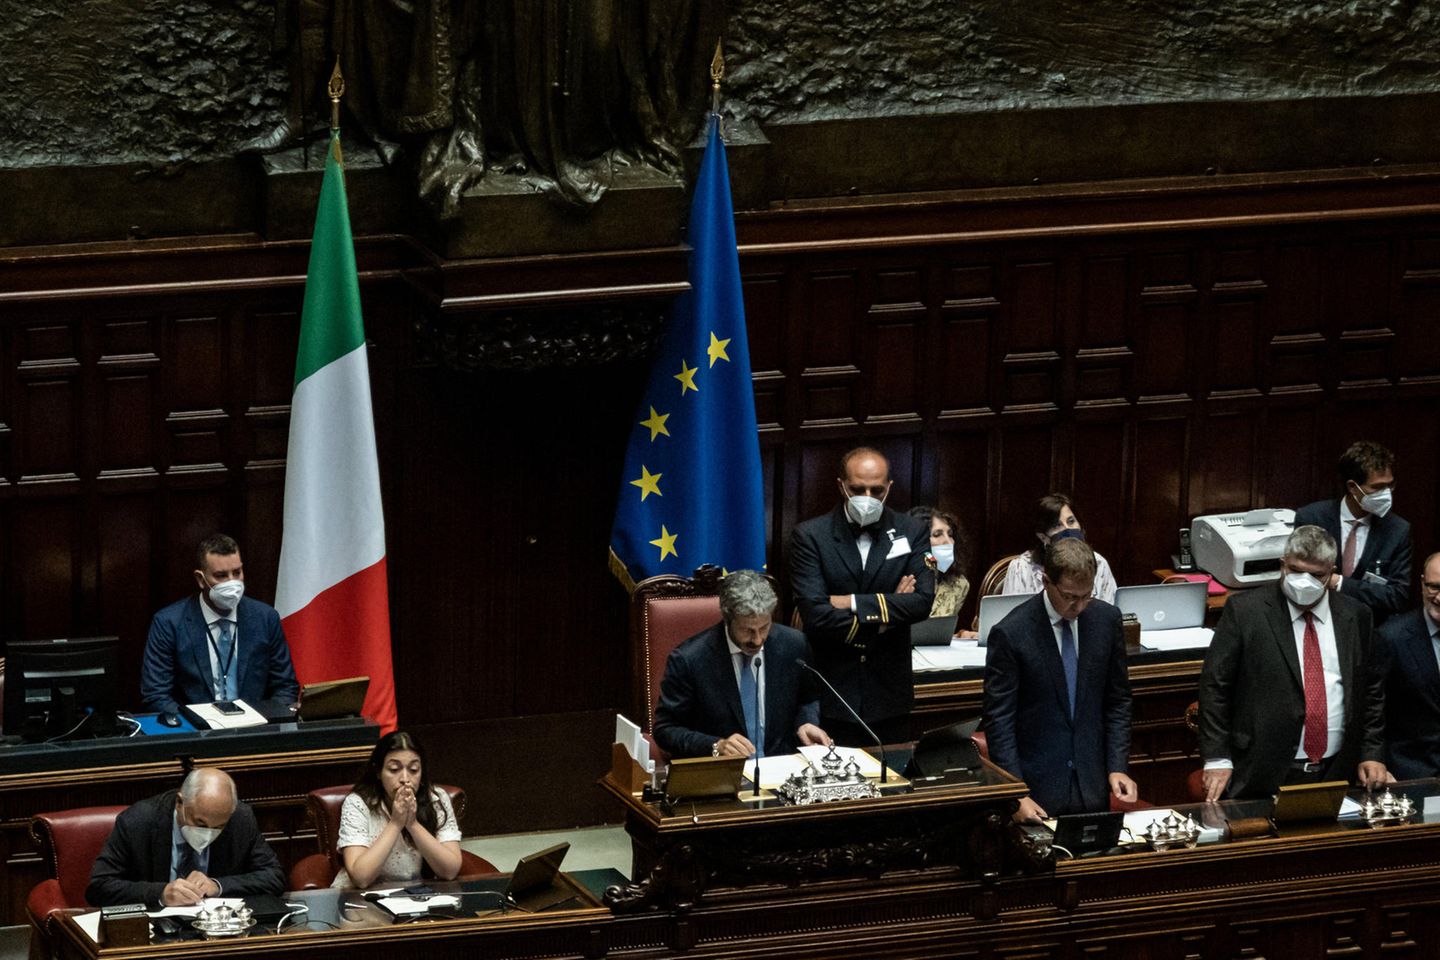 Nach dem Rücktritt von Mario Draghi wird in Italien ein neues Parlament gewählt